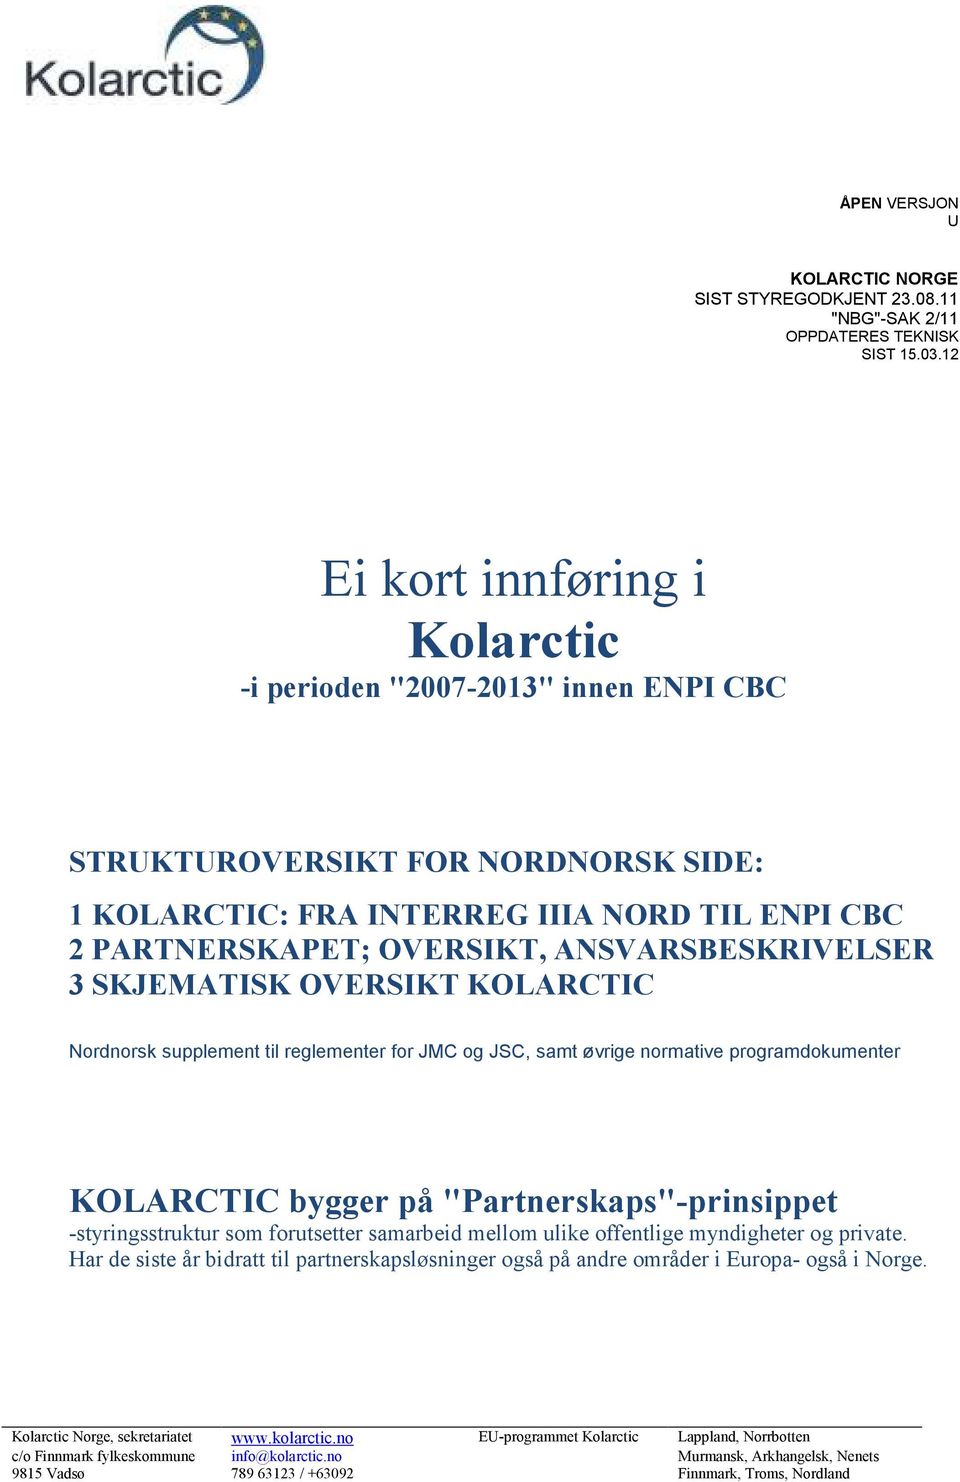 ANSVARSBESKRIVELSER 3 SKJEMATISK OVERSIKT KOLARCTIC Nordnorsk supplement til reglementer for JMC og JSC, samt øvrige normative programdokumenter KOLARCTIC bygger på "Partnerskaps"-prinsippet